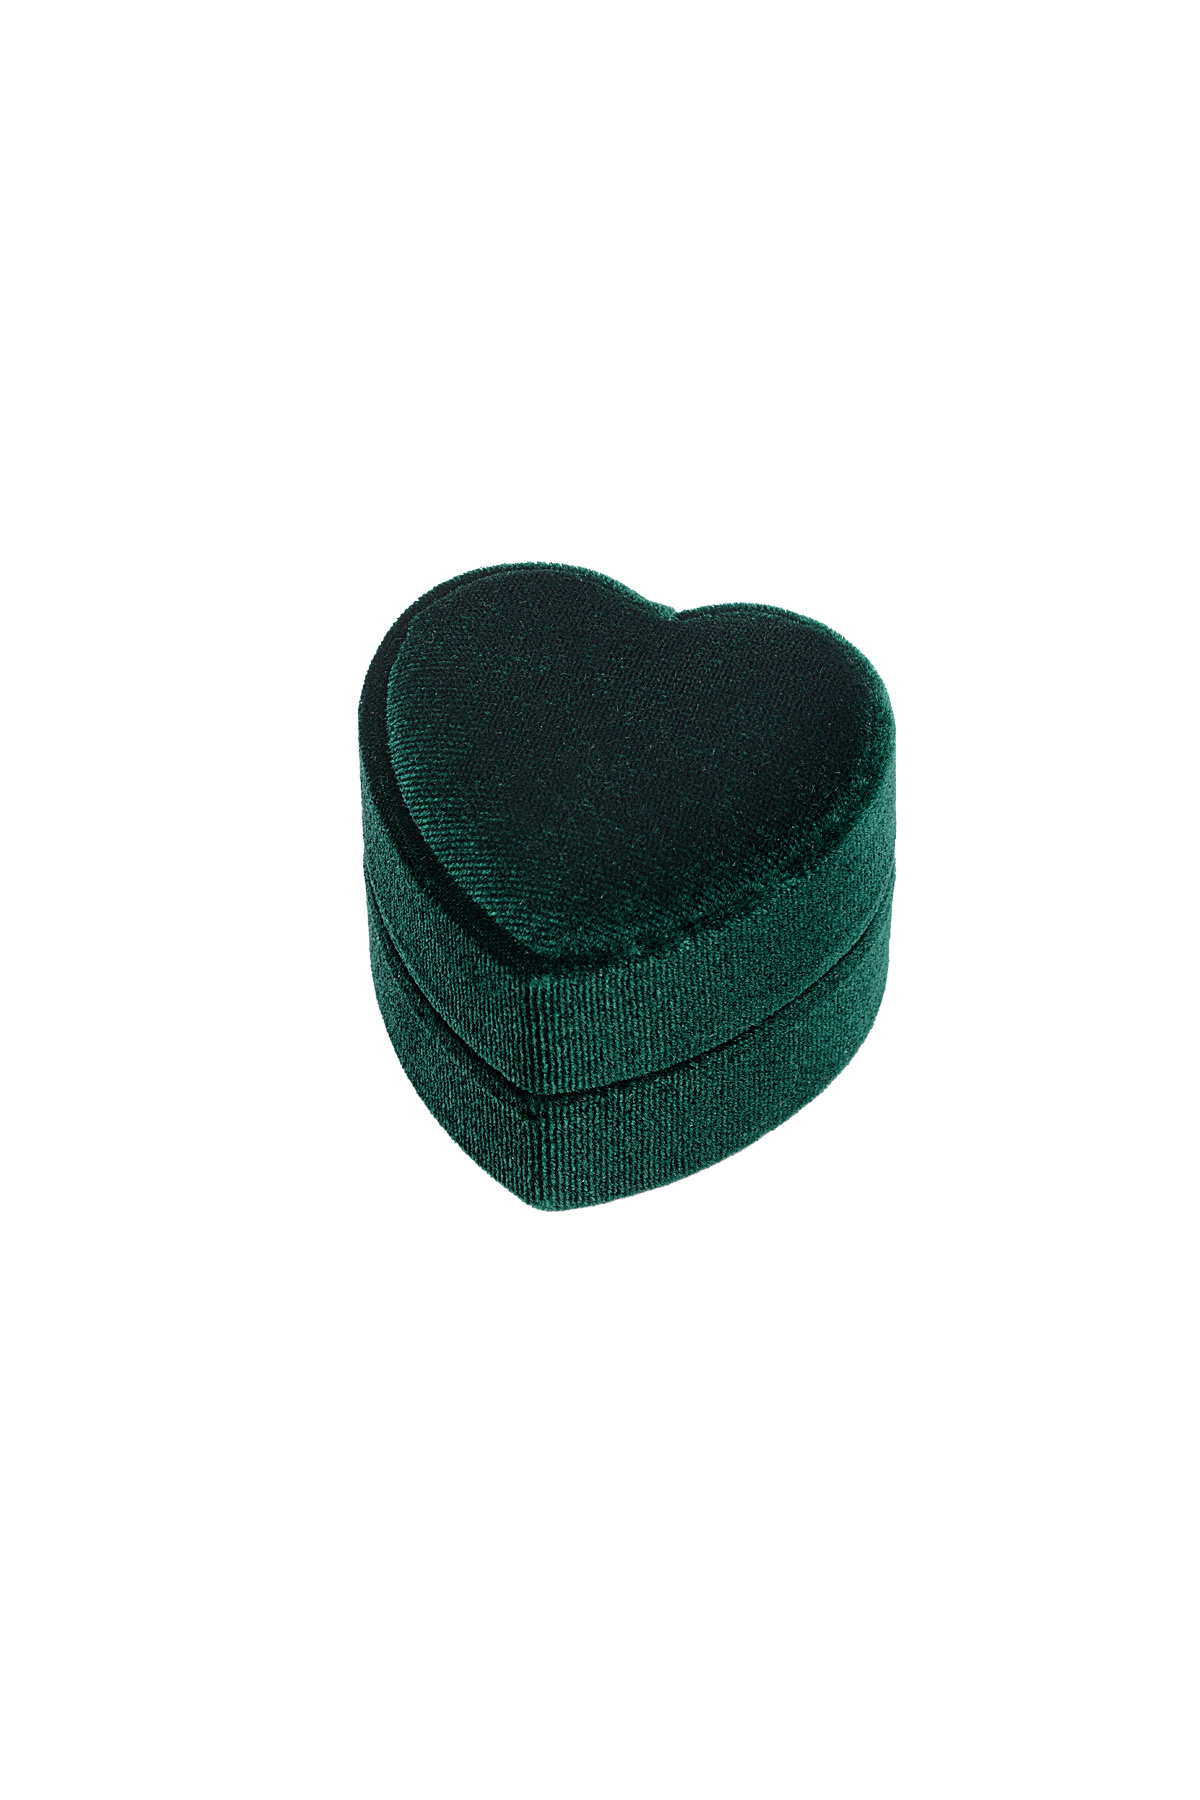 Joyero corazón terciopelo - verde h5 